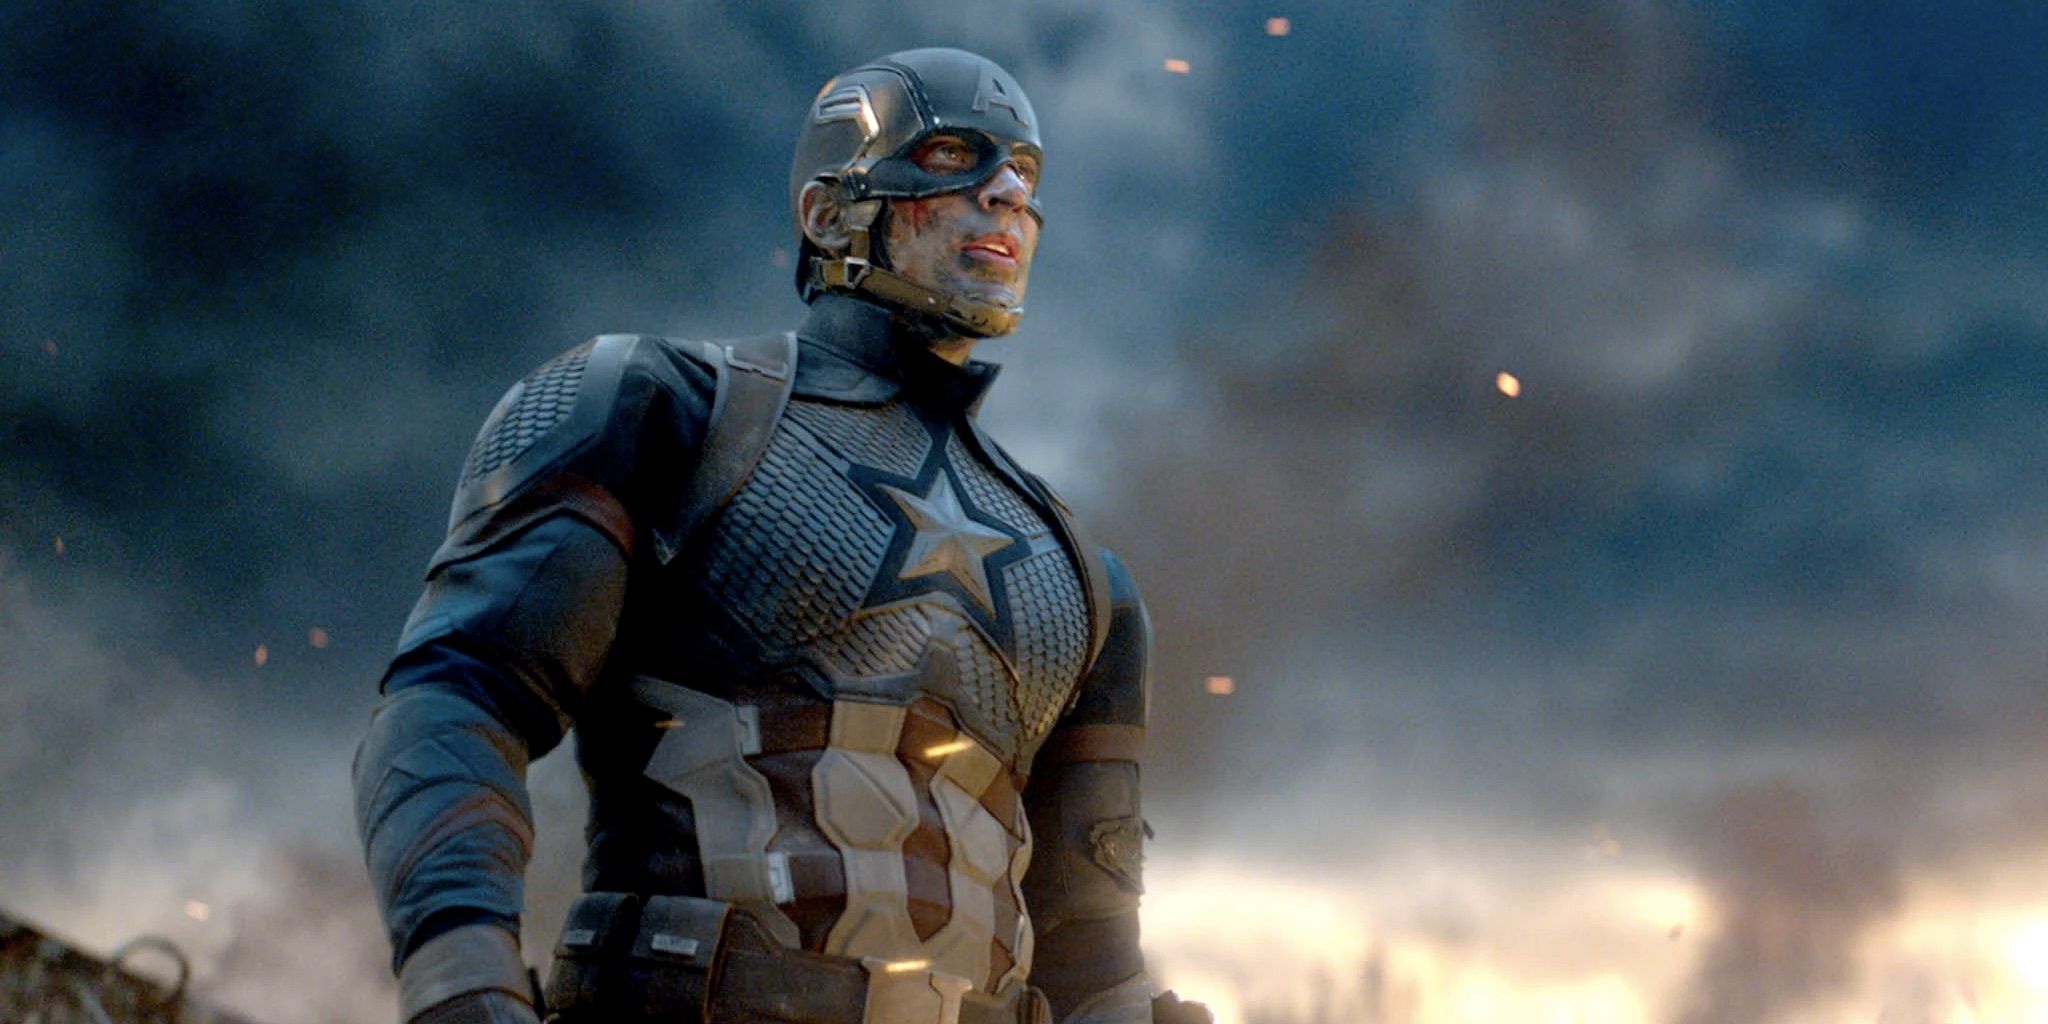 Chris Evans in Avengers Endgame as Captain America